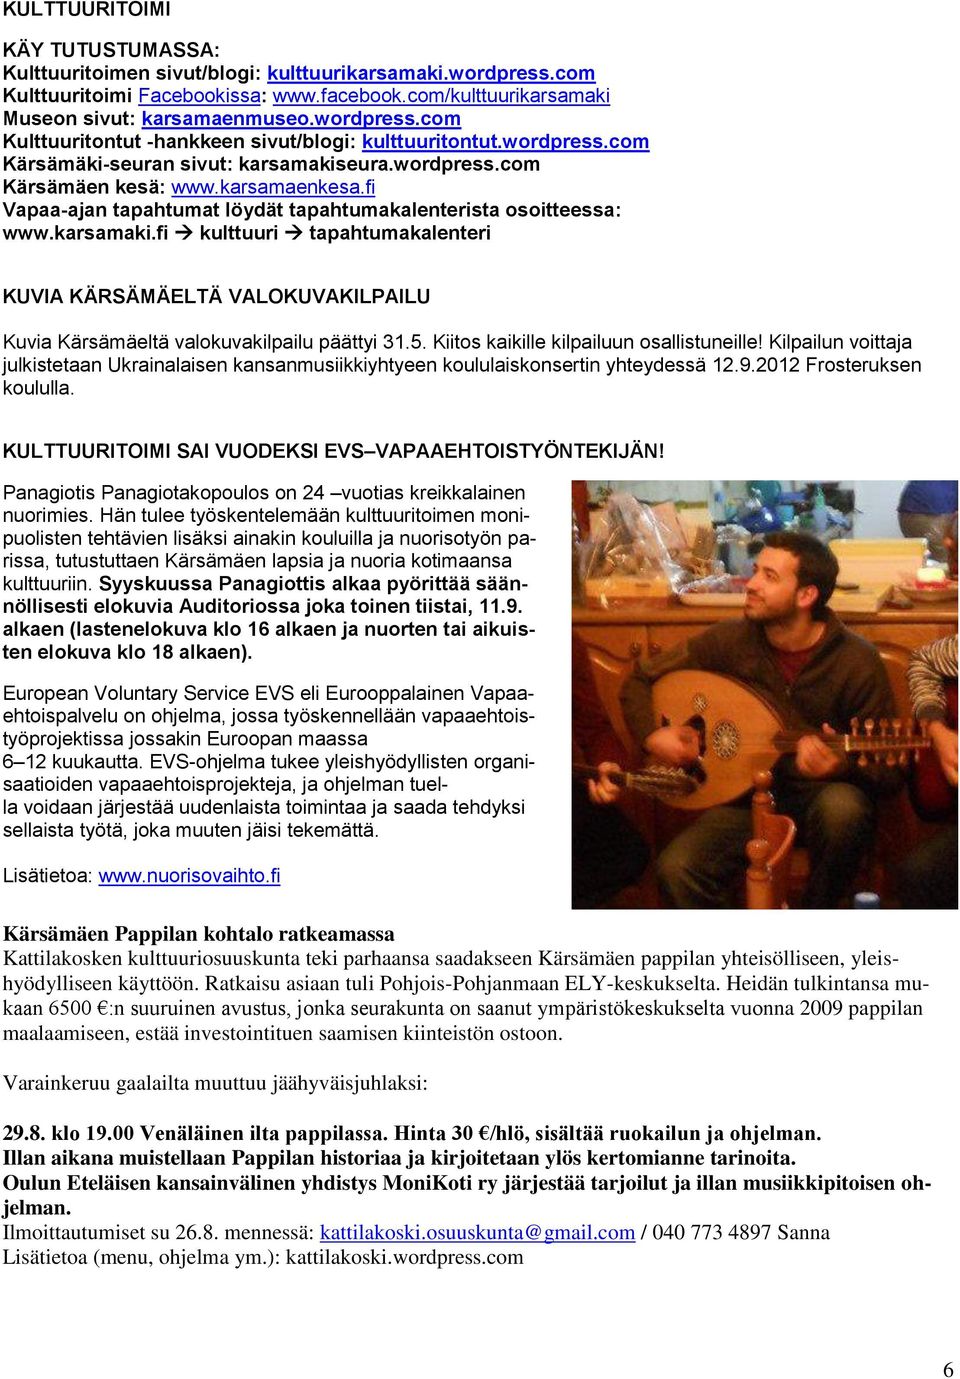 5. Kiitos kaikille kilpailuun osallistuneille! Kilpailun voittaja julkistetaan Ukrainalaisen kansanmusiikkiyhtyeen koululaiskonsertin yhteydessä 12.9.2012 Frosteruksen koululla.